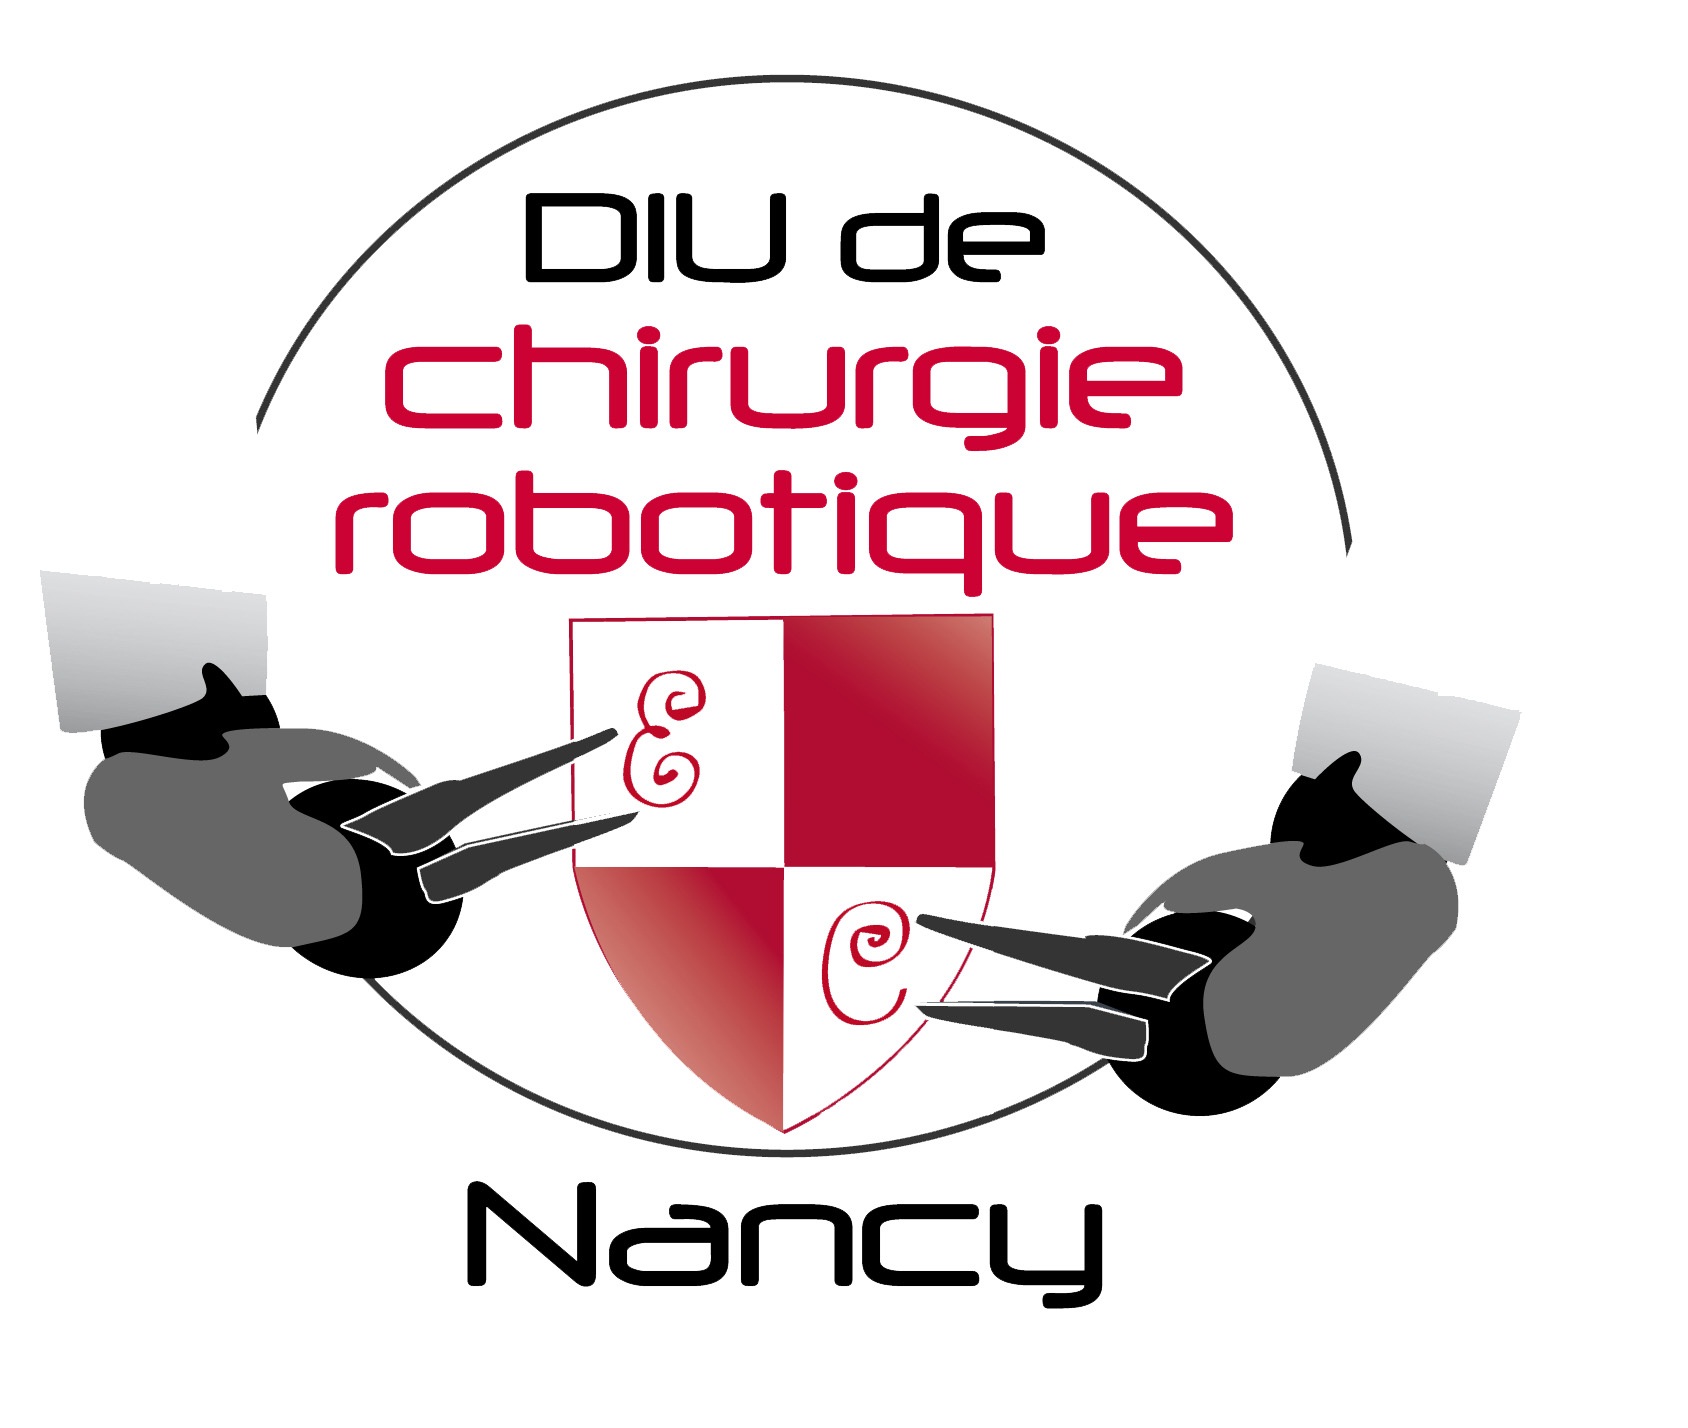 Chirurgie robotique Nancy 2012 – Présentation du robot Da Vinci.